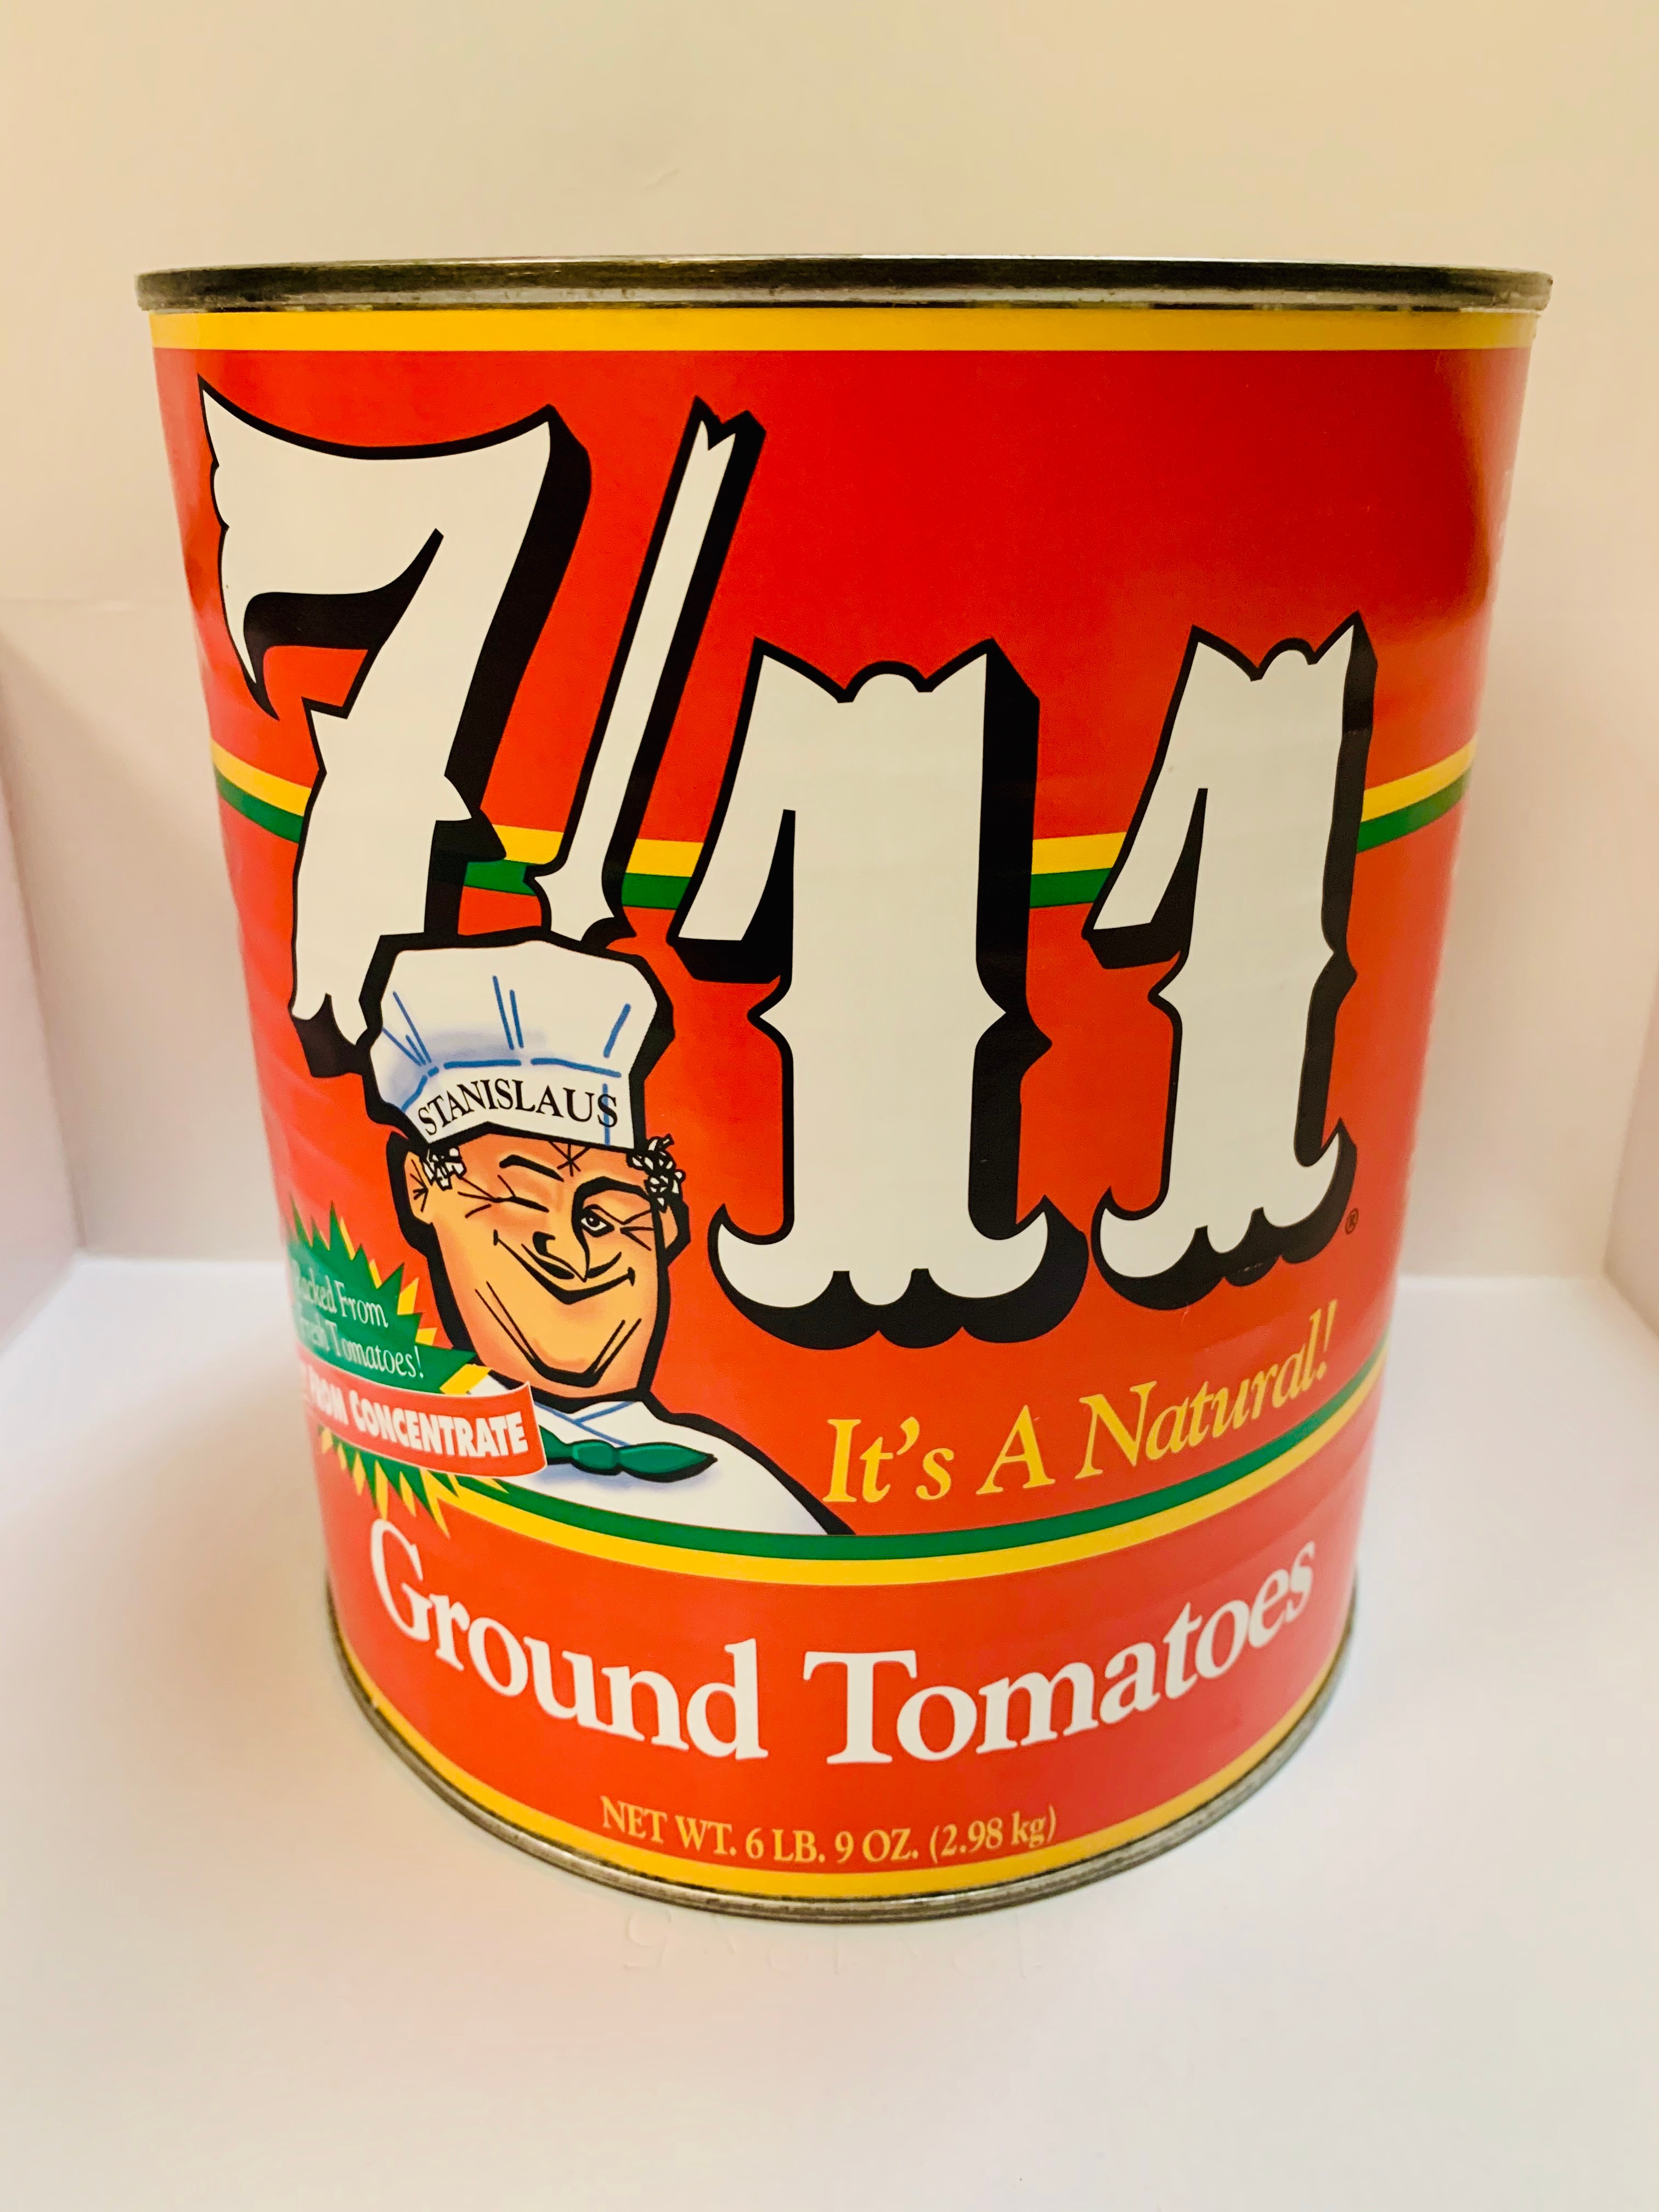 7/11 Ground Tomatoes